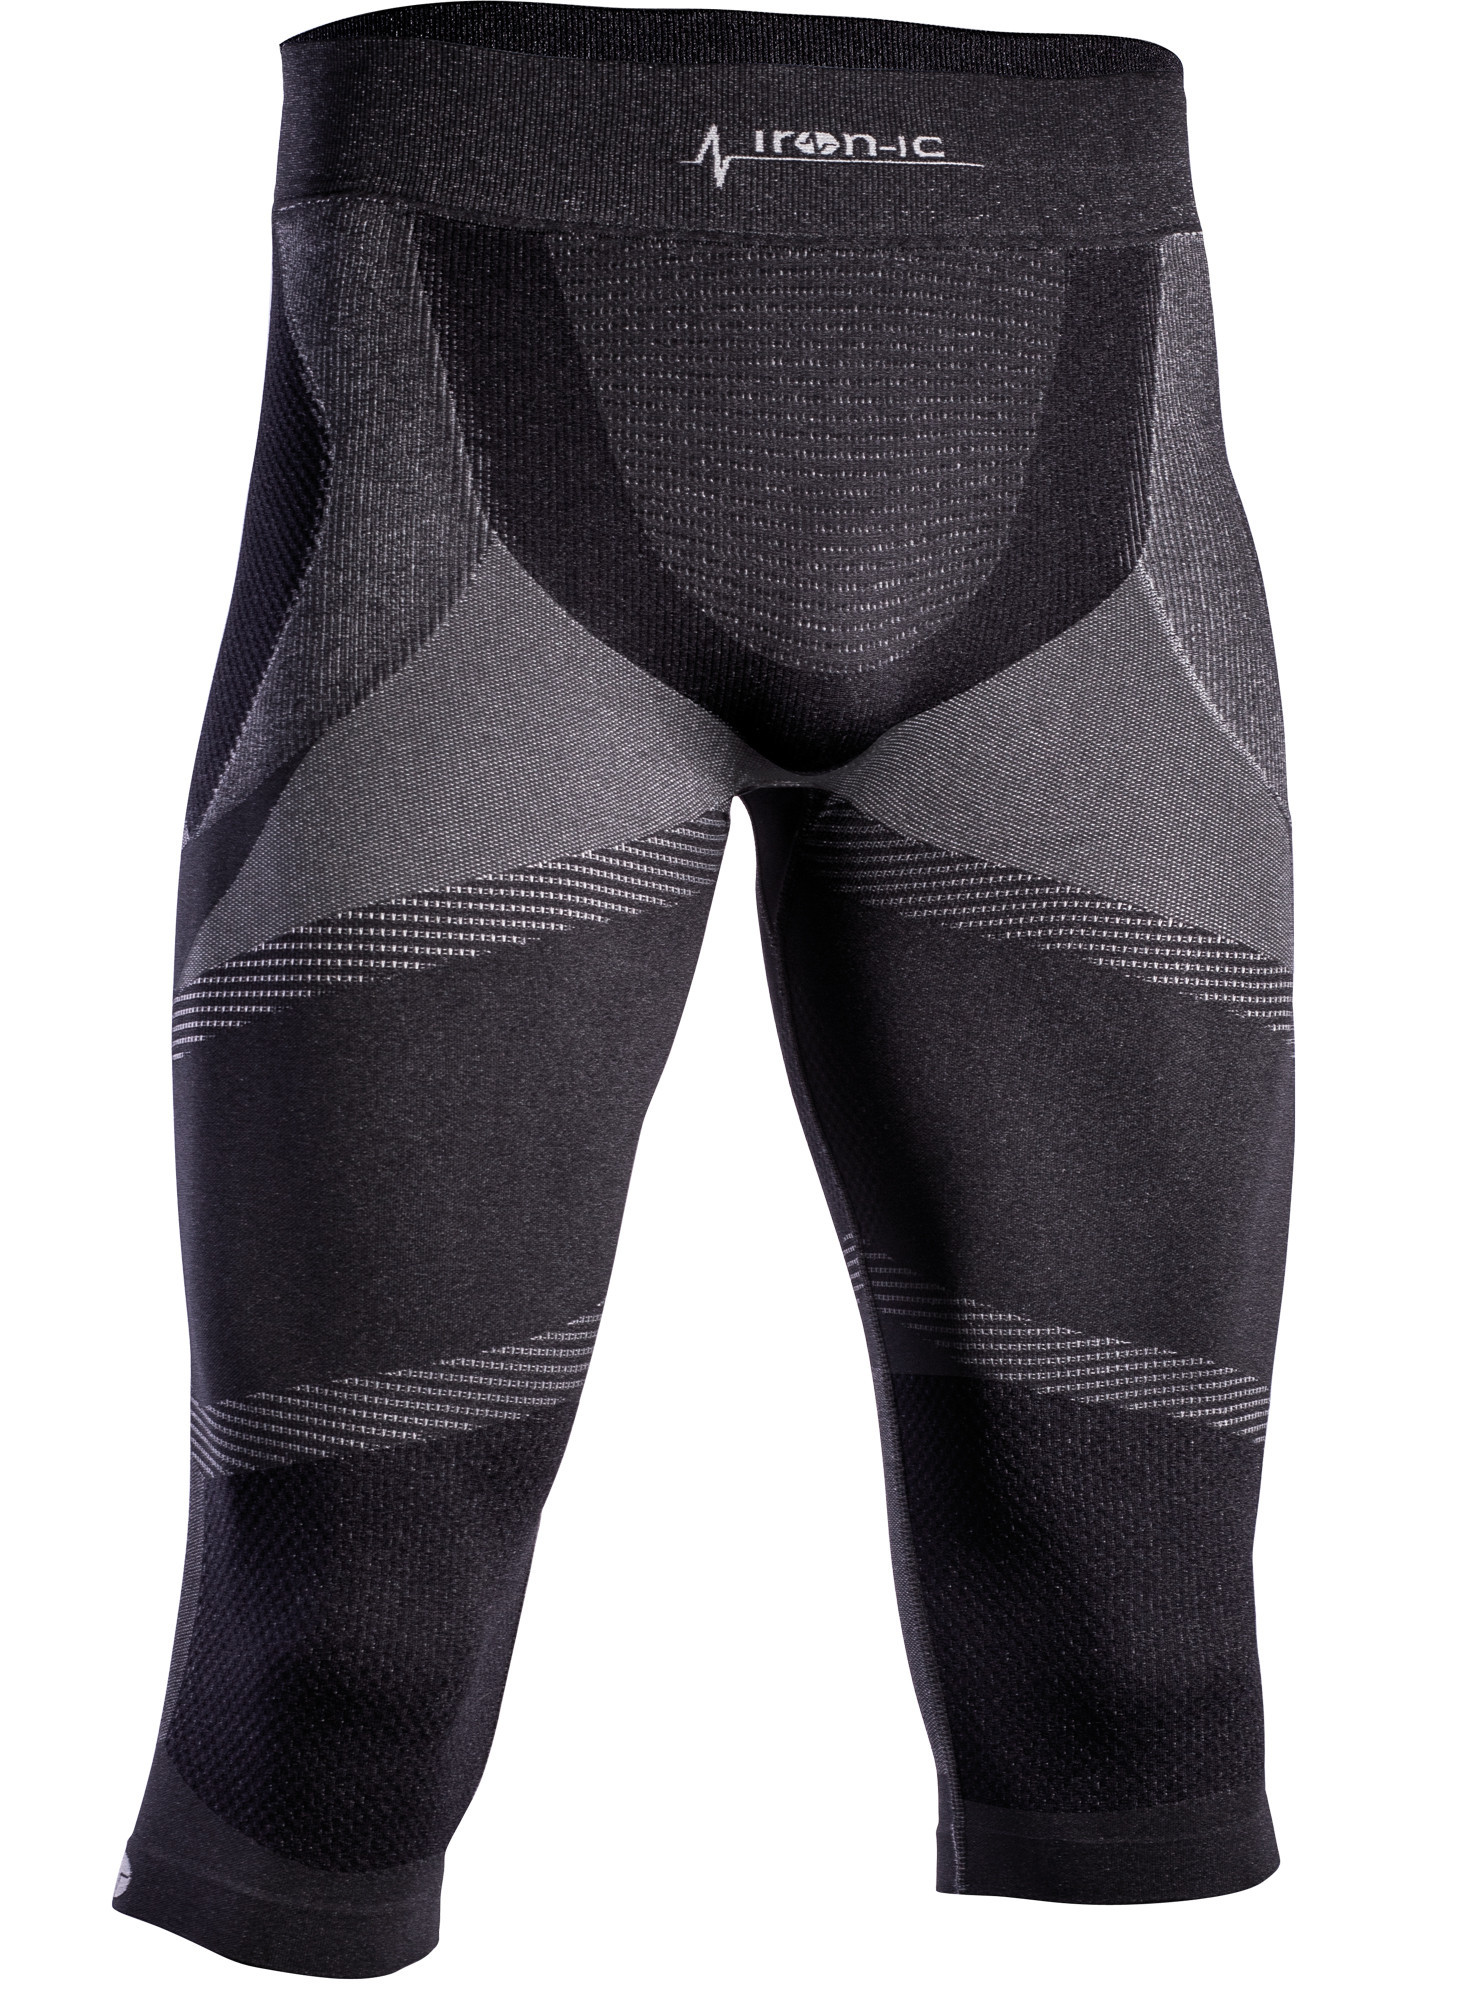 Pánske 3/4 funkčné nohavice IRON-IC - čierna Farba: Čierna, Veľkosť: S / M